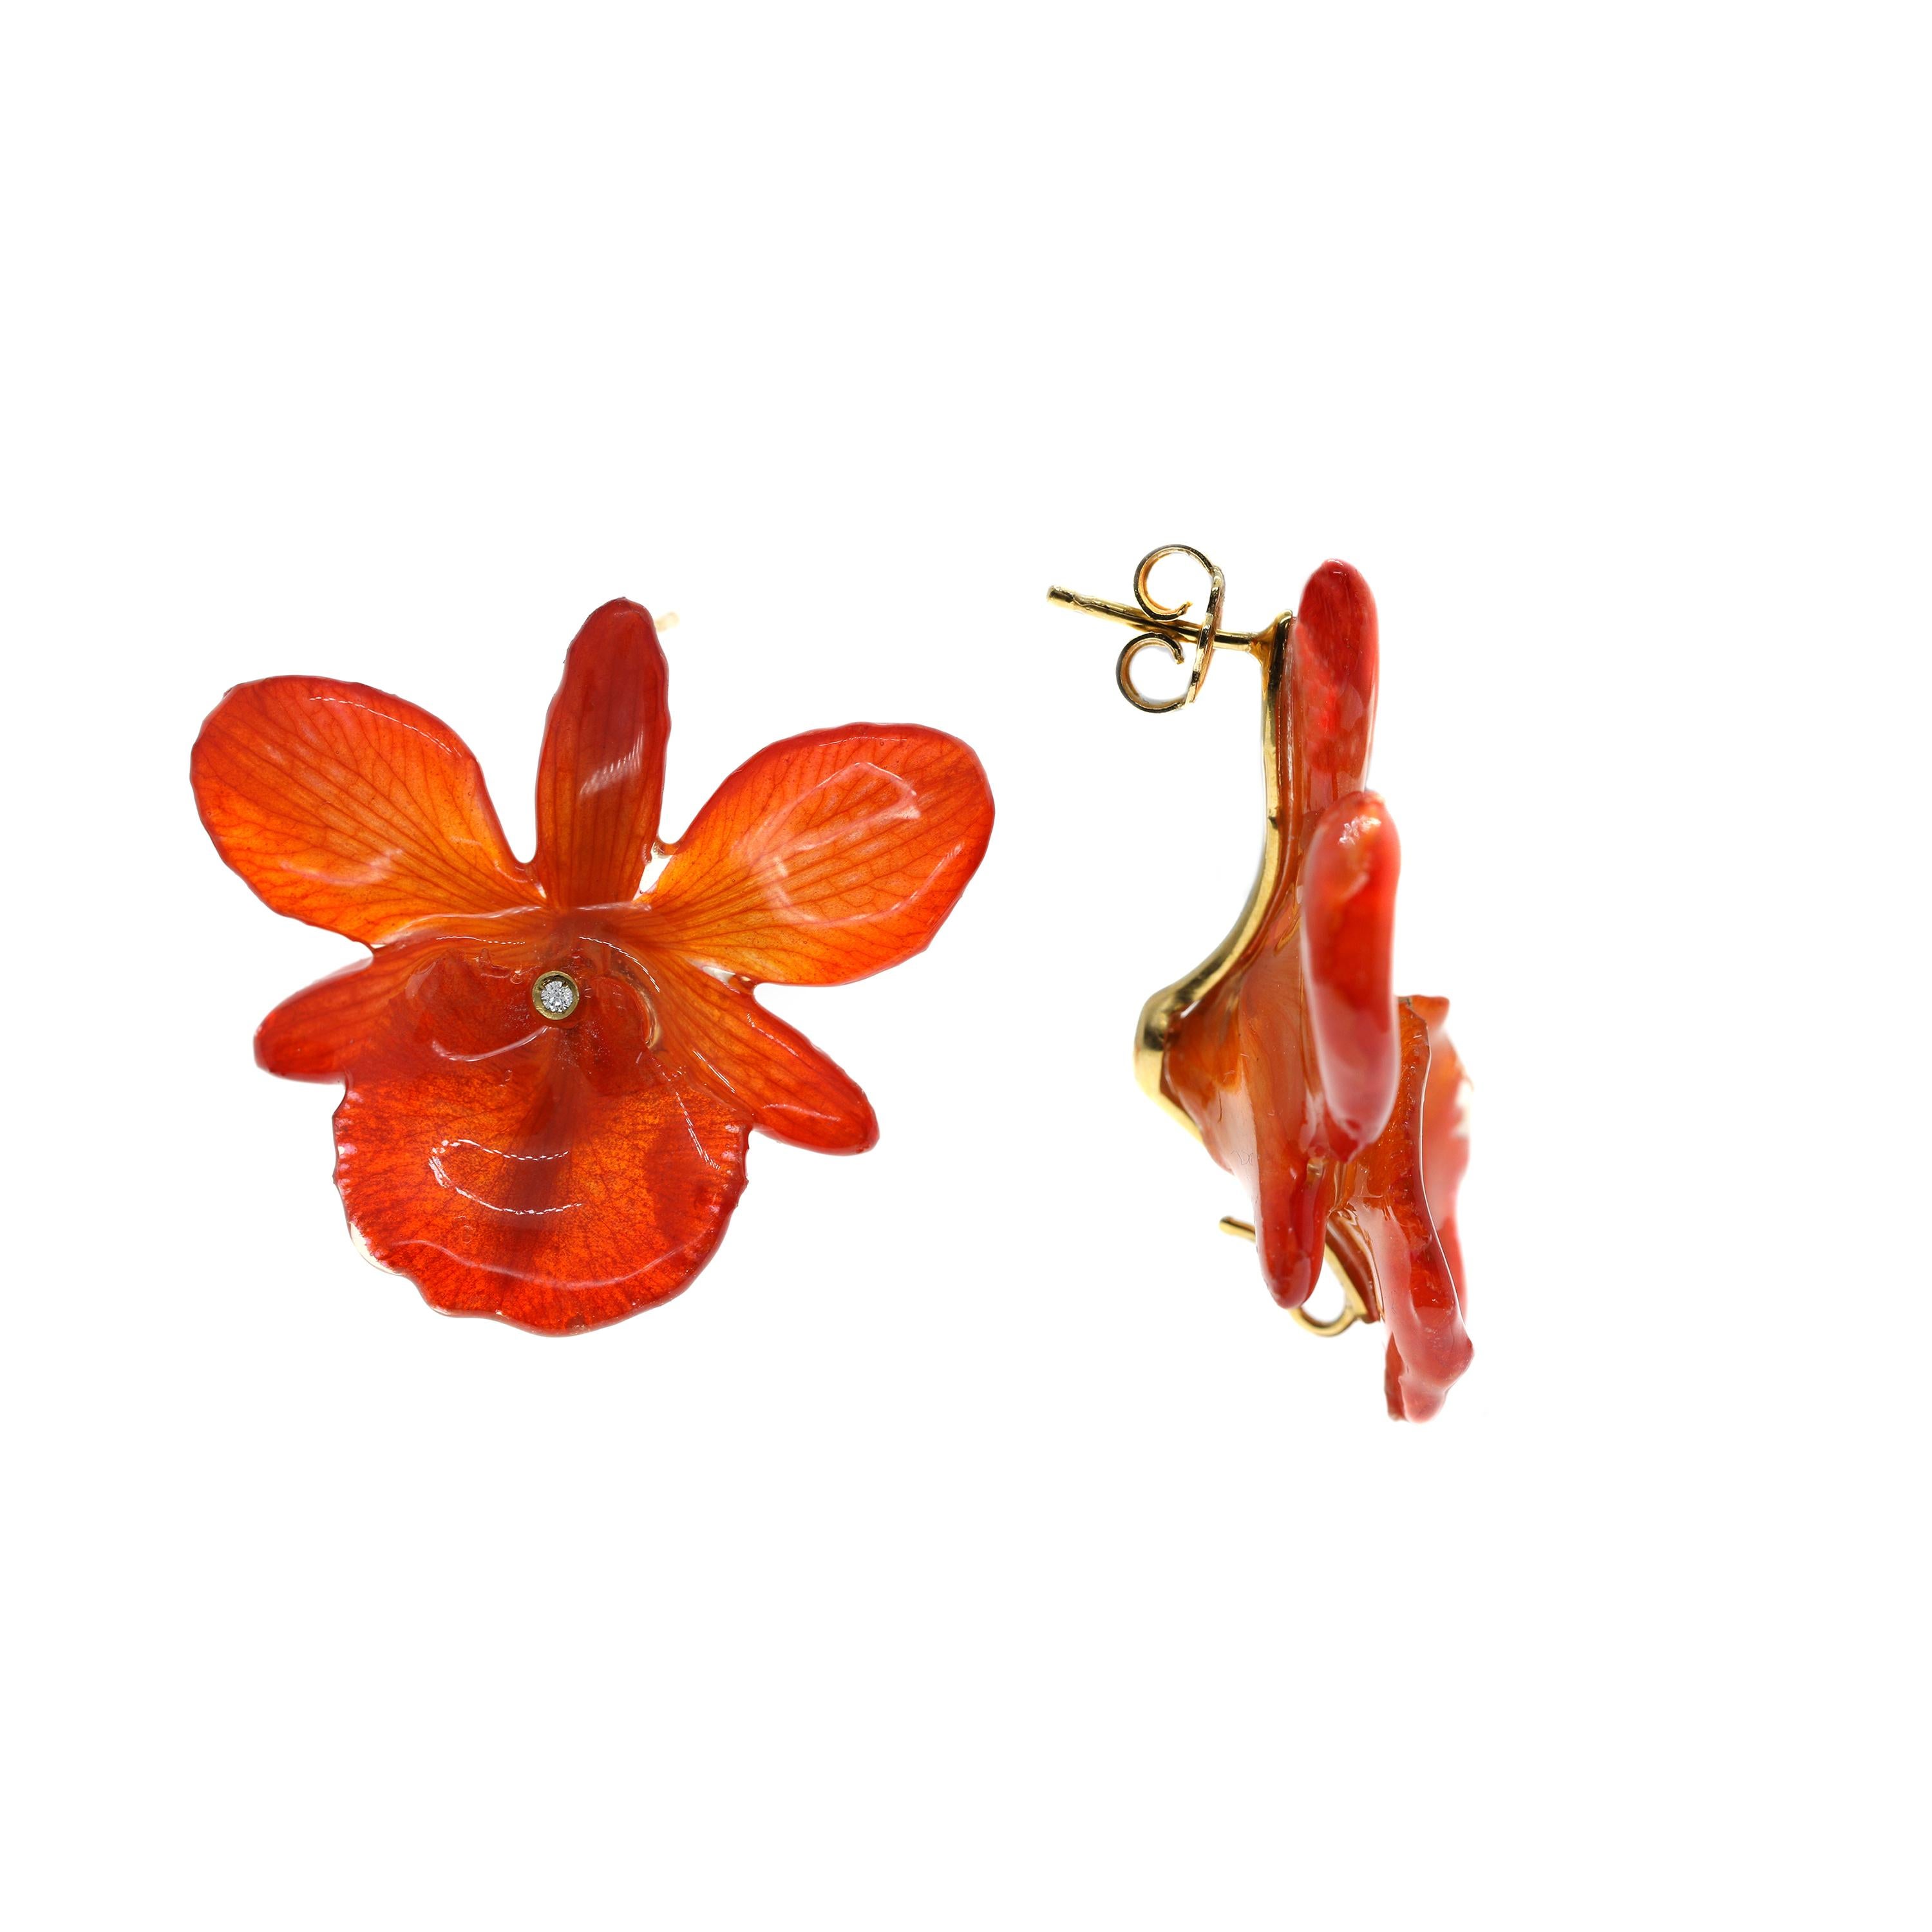 Une vibrante paire de boucles d'oreilles florales créées de main de maître entièrement à la main. Chaque boucle d'oreille présente une fleur parfaite d'une véritable orchidée, qui a été transformée pour préserver sa beauté pour l'éternité. 

Les